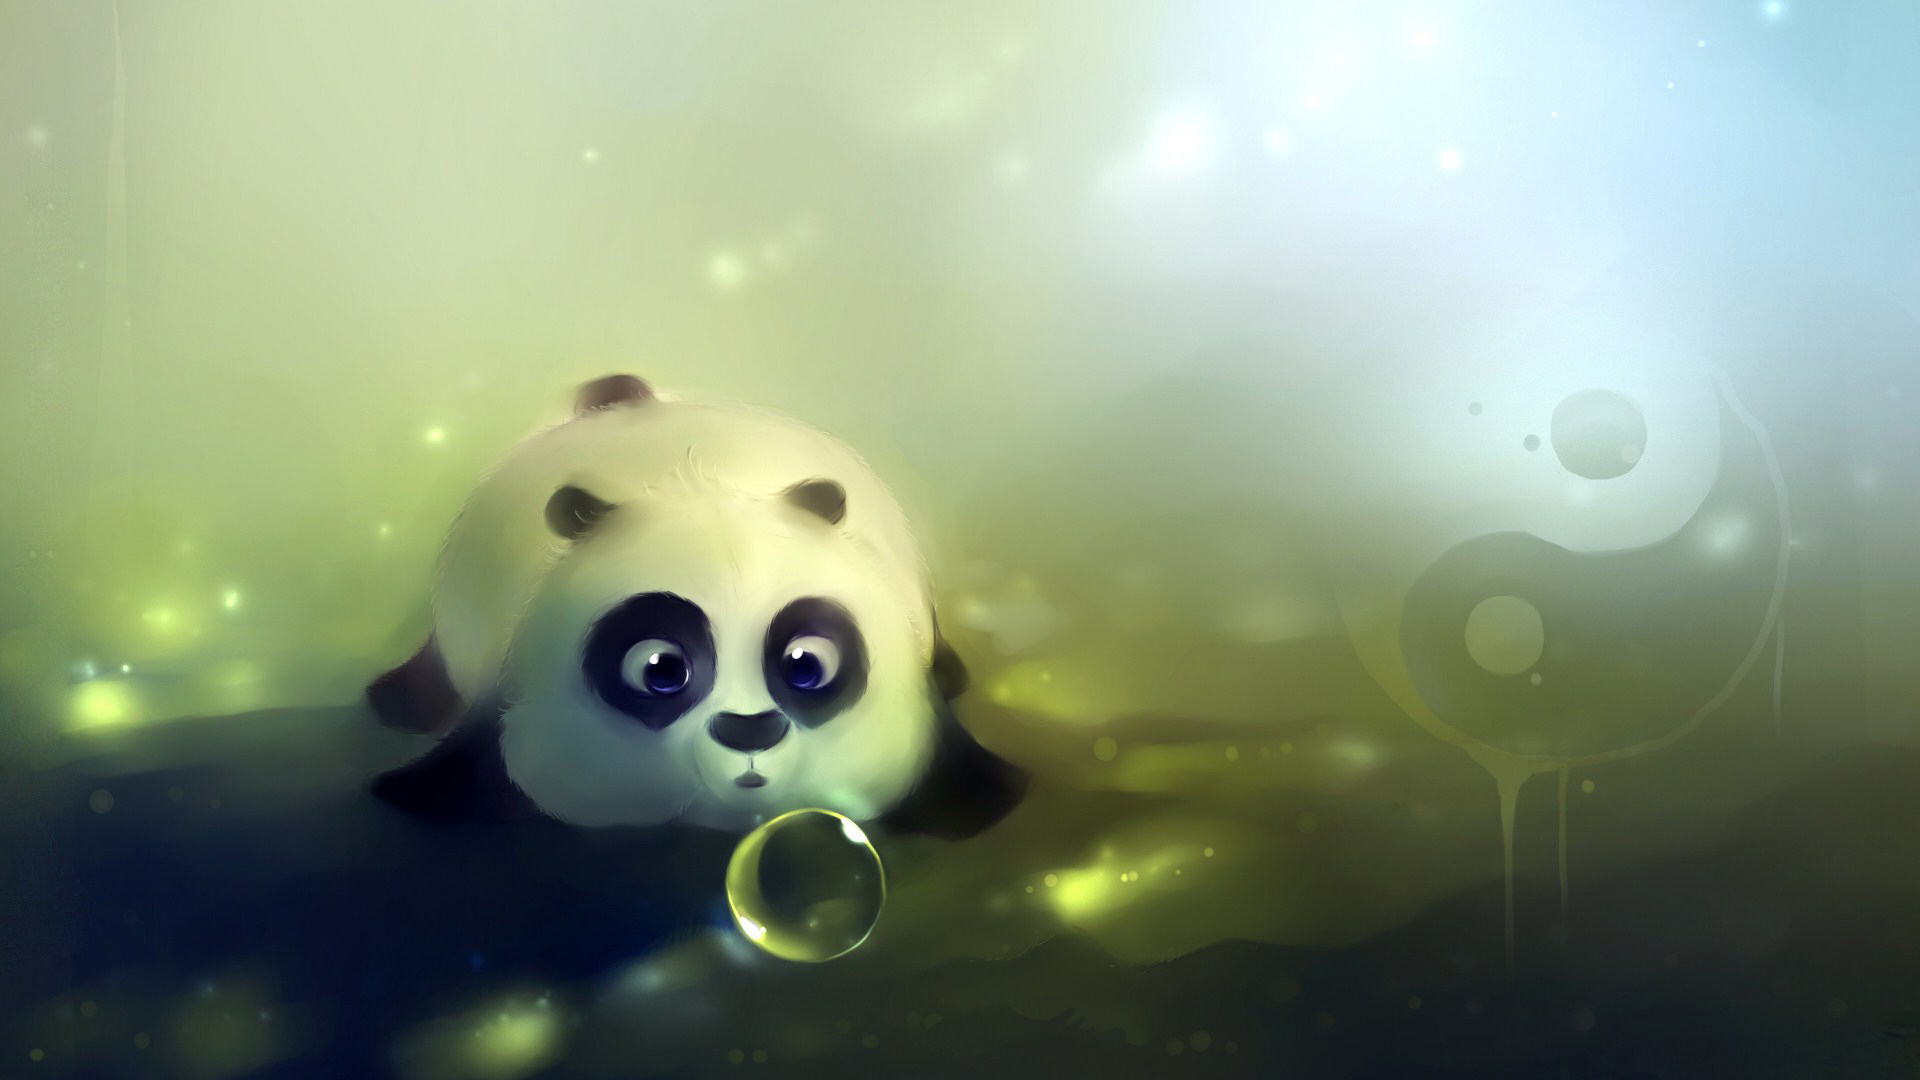  com   Pintura Osito Panda   Wallpapers de Osos Descargar Online